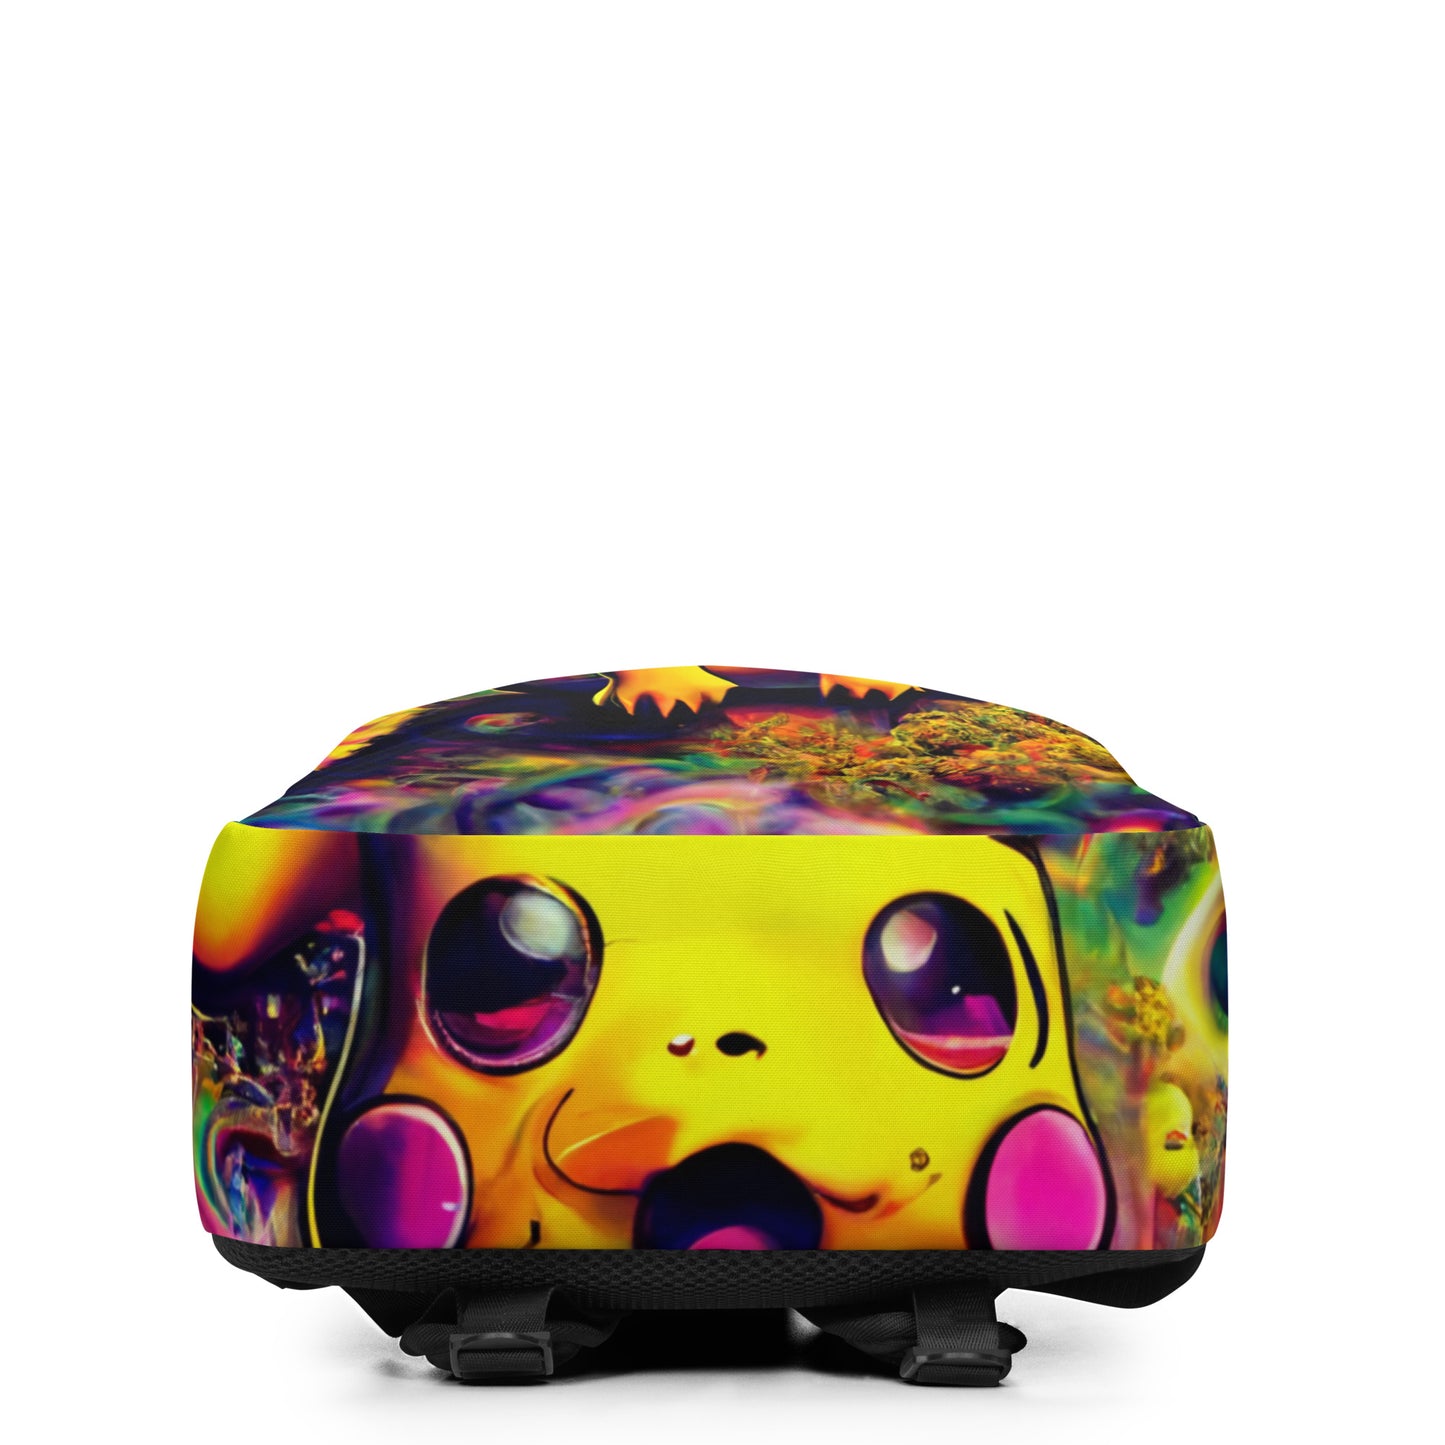 Pikachu Trip 1.0 Minimalist Backpack